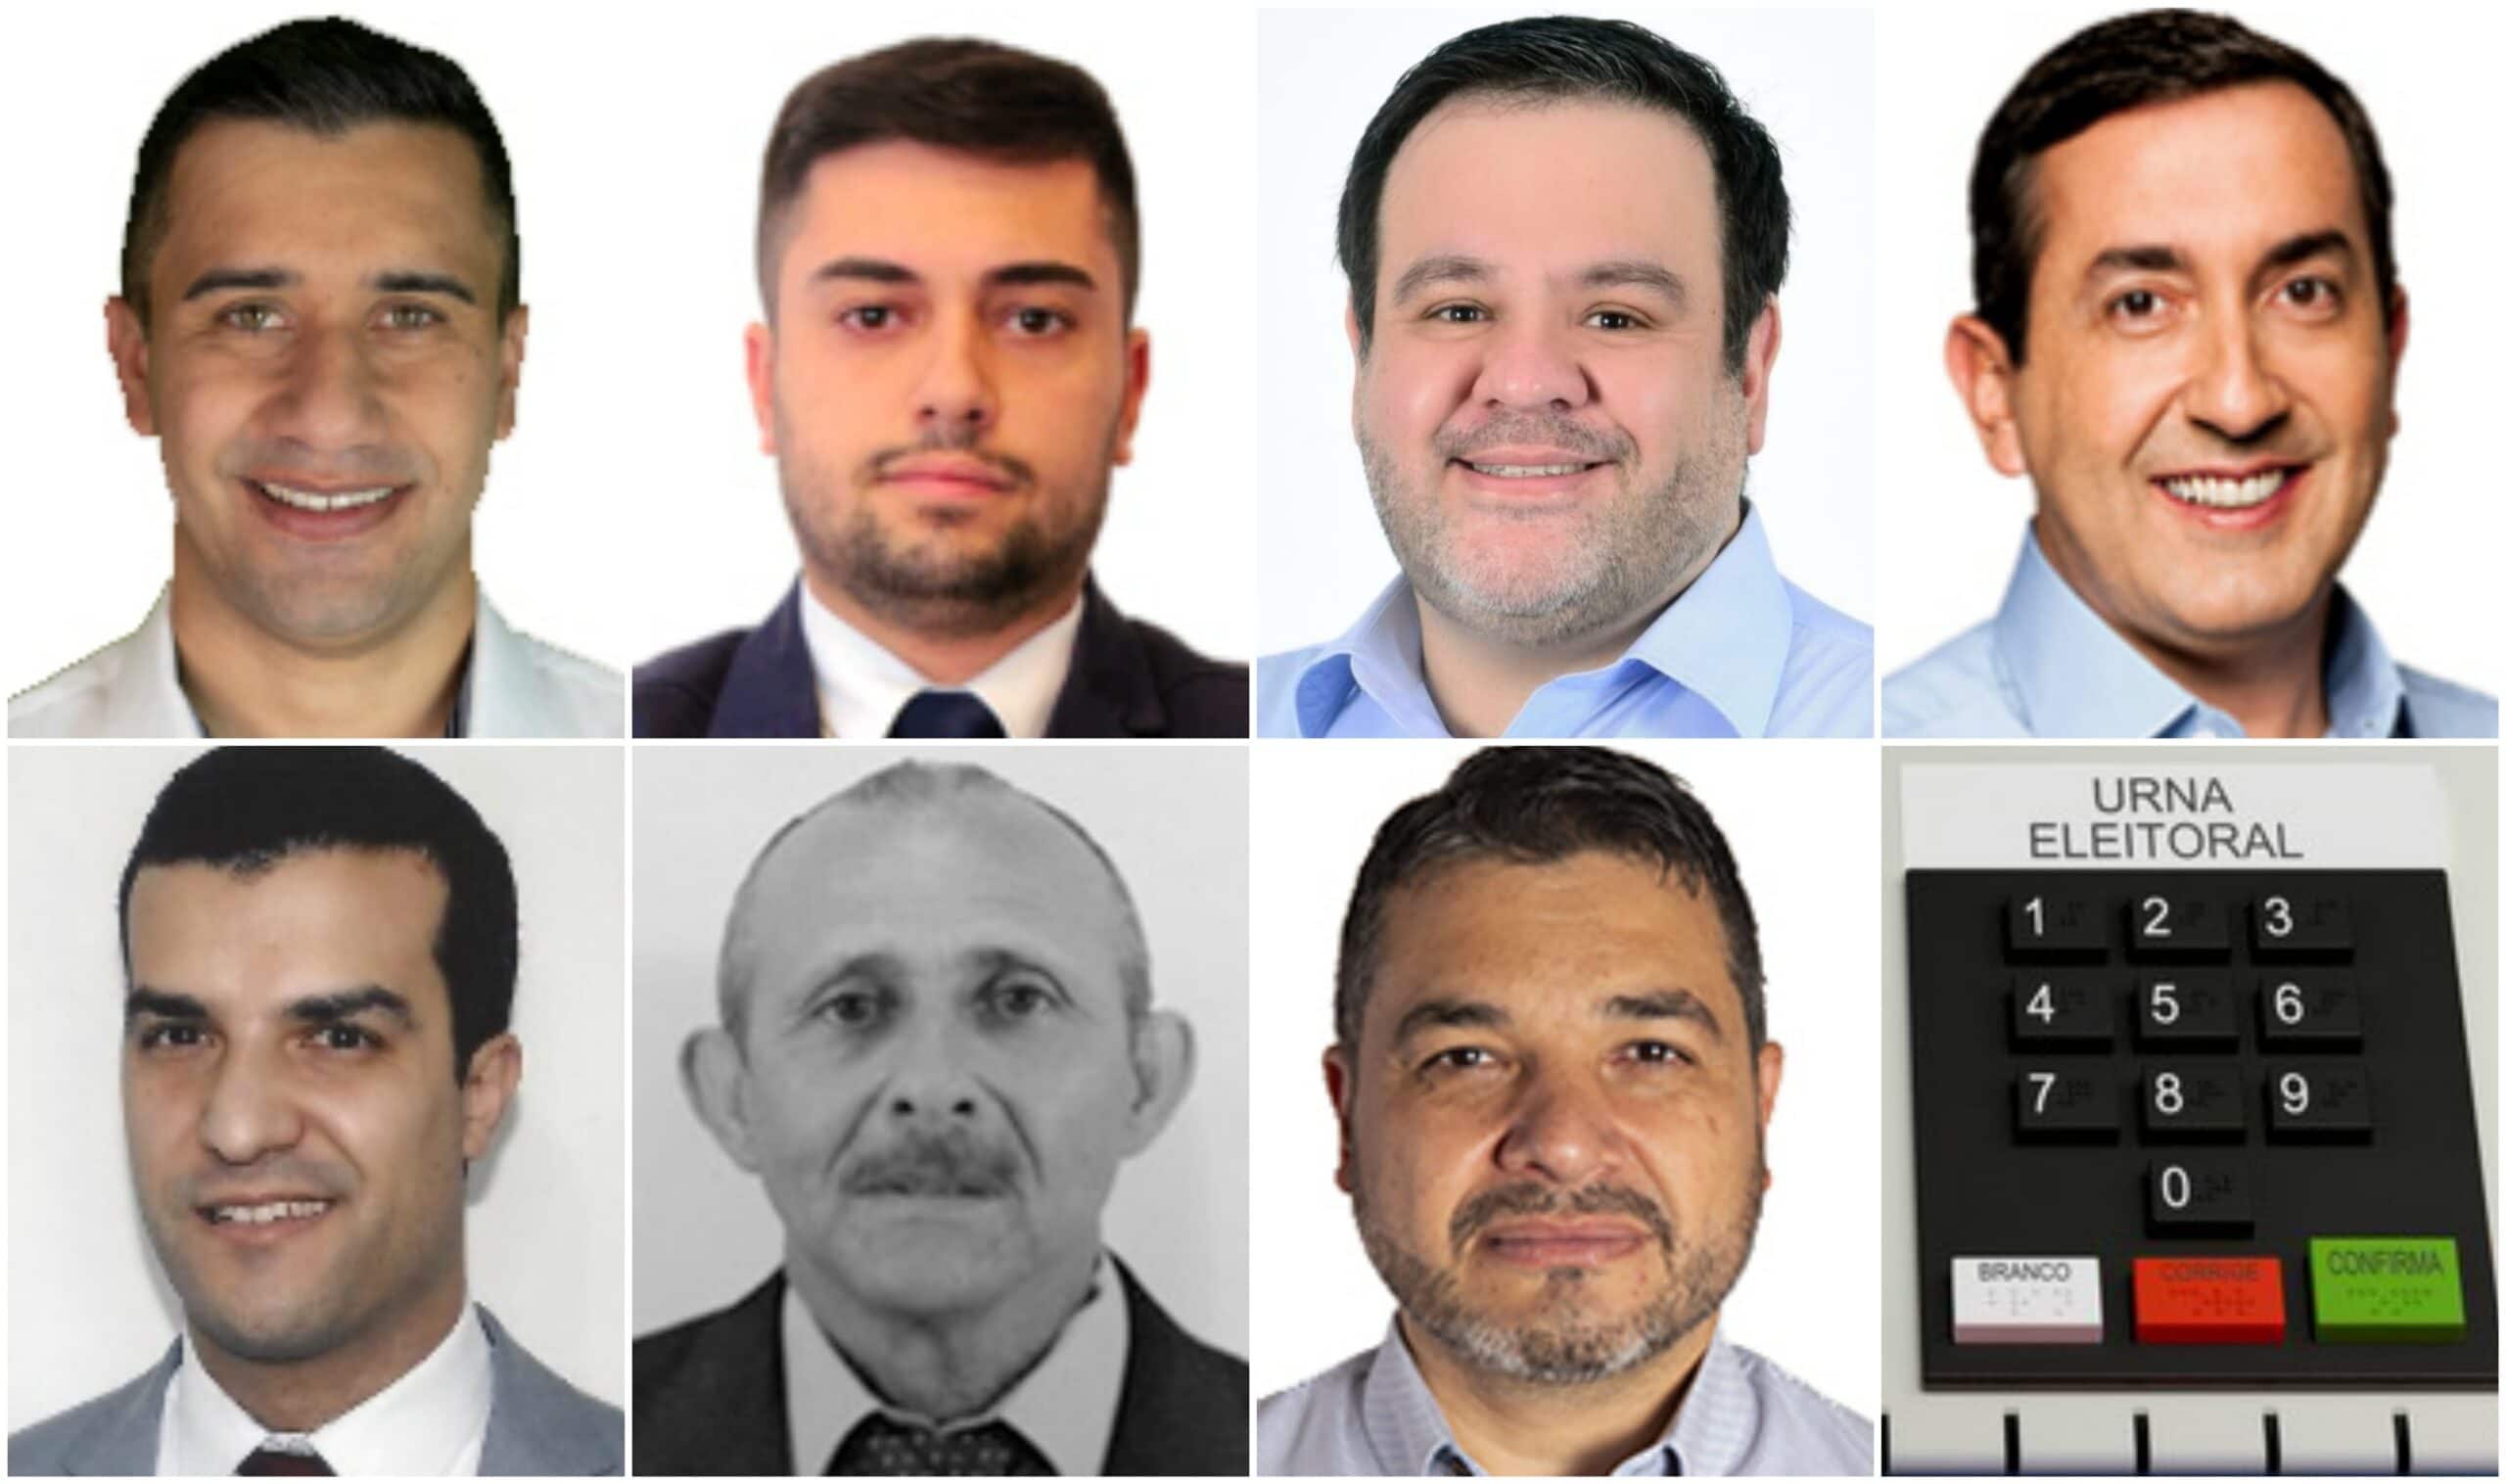 Candidatos a prefeito de Mogi das Cruzes - Eleições 2020